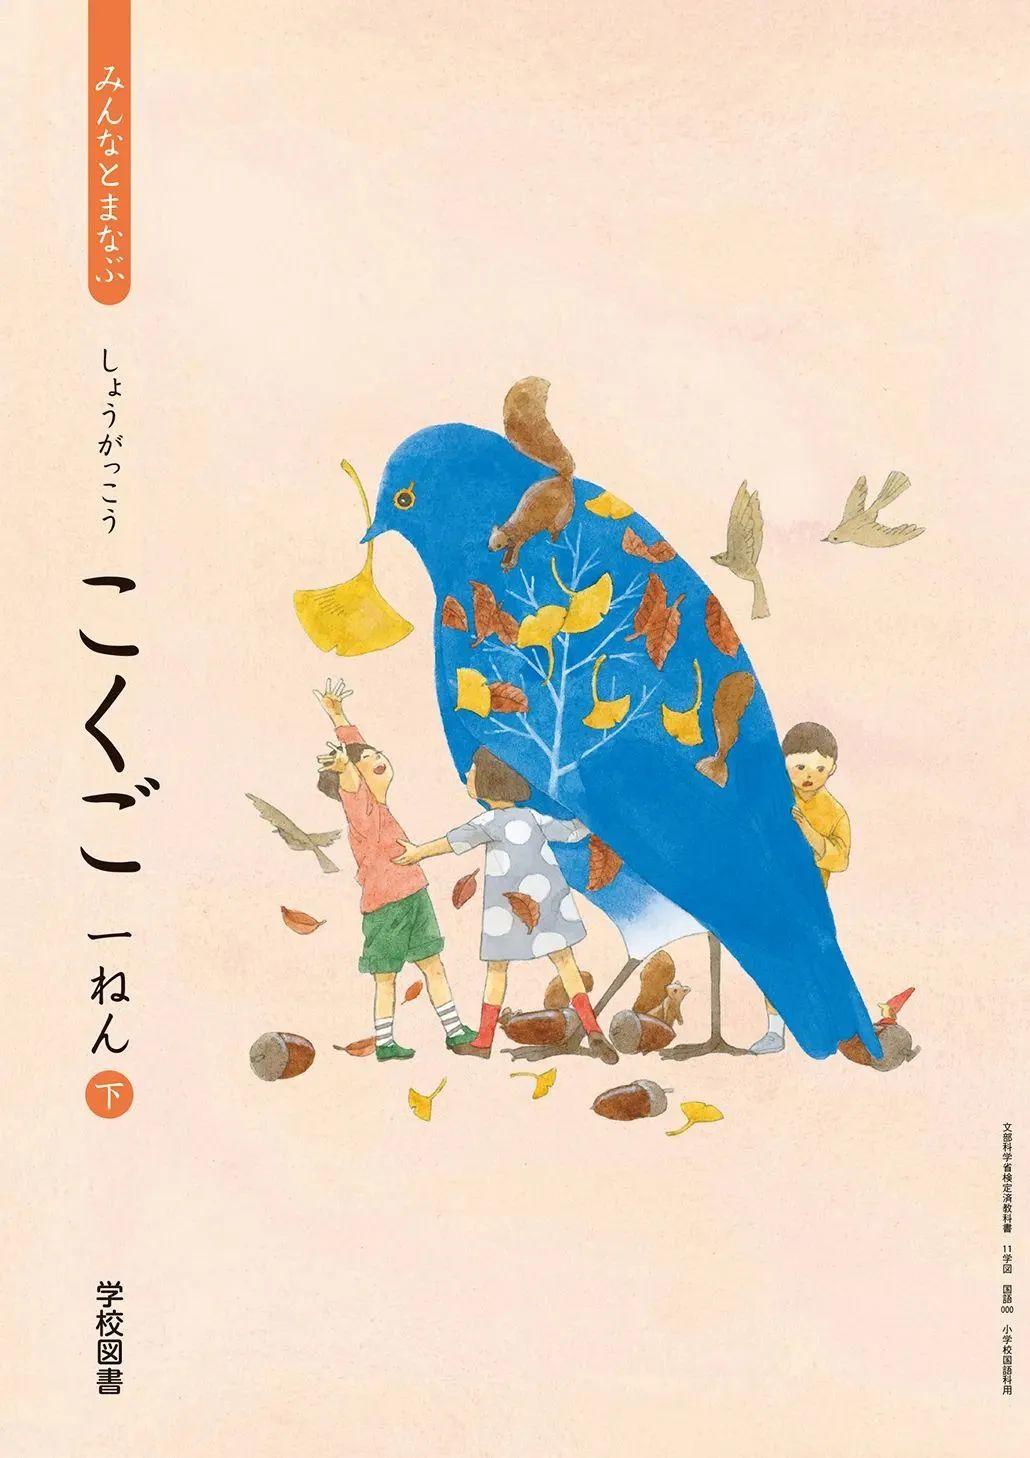 日本中小学生教科书封面设计,太美了吧! 第7张